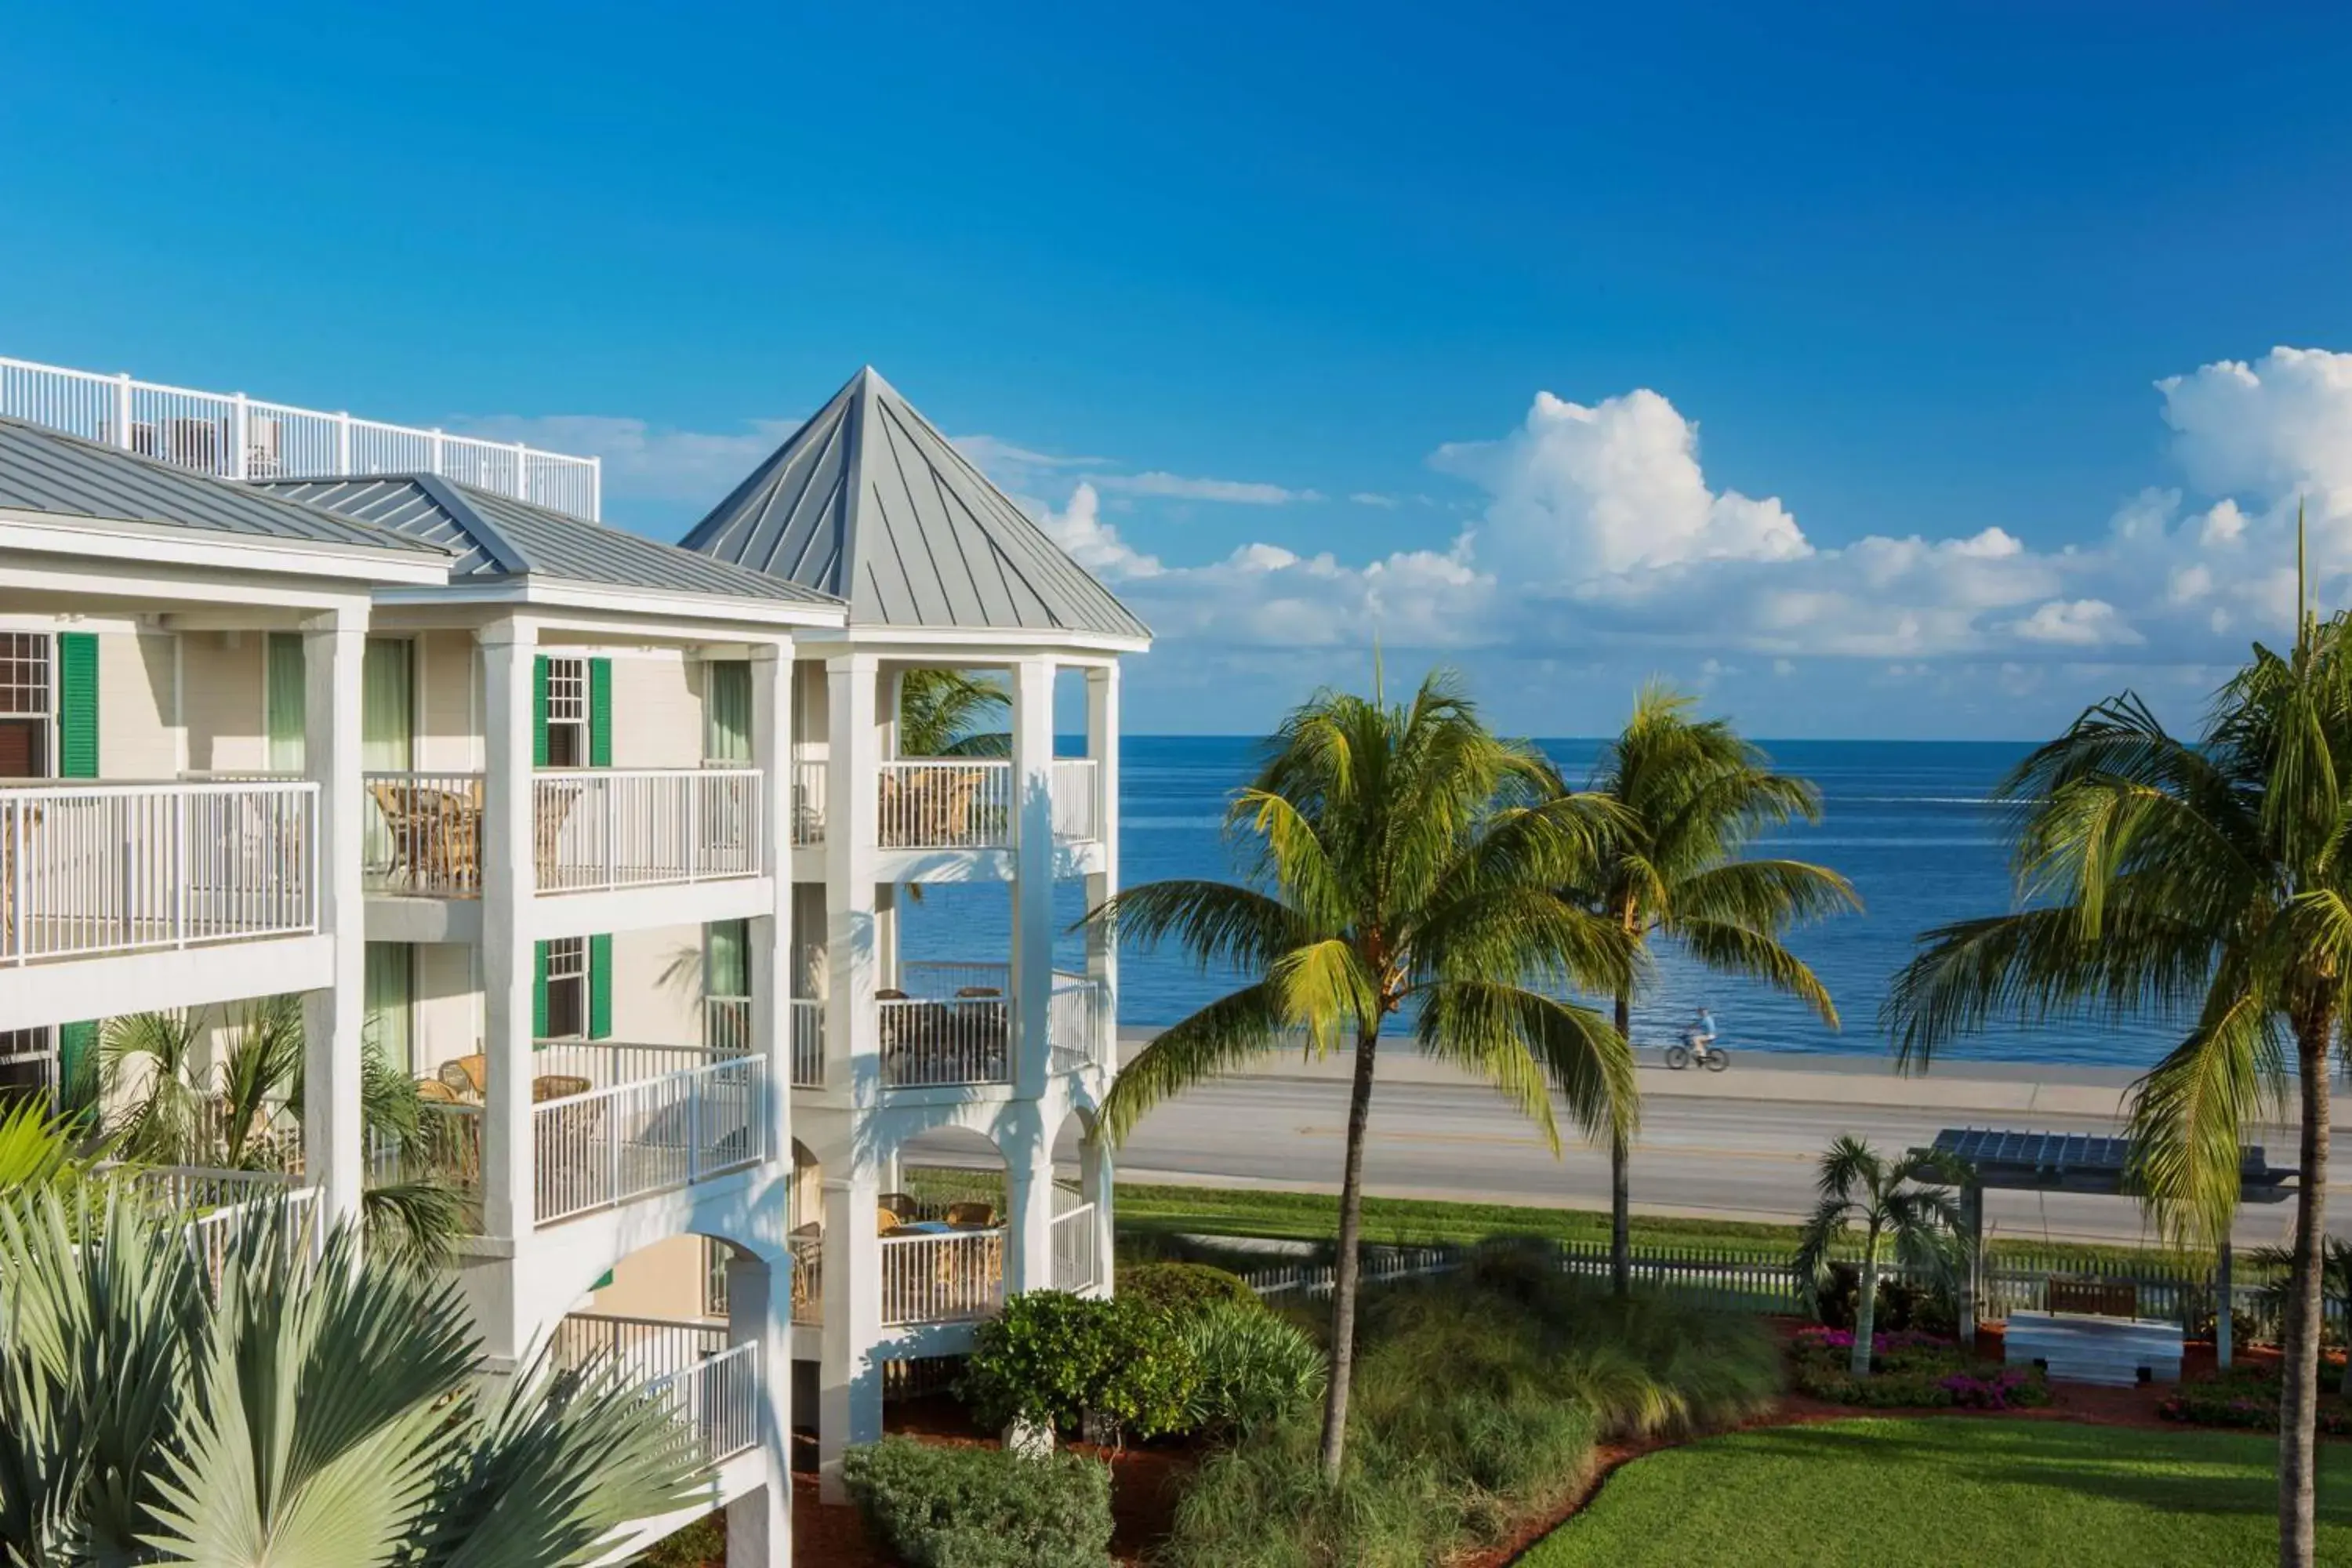 Property building, Pool View in Hyatt Residence Club Key West, Windward Pointe